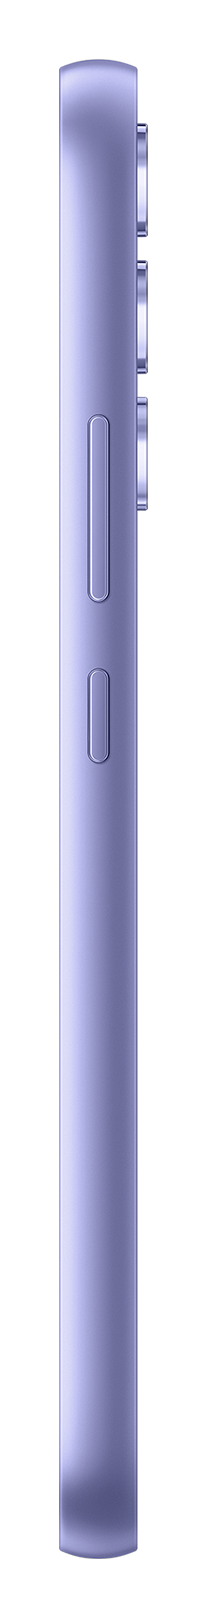 Samsung A34 violet side